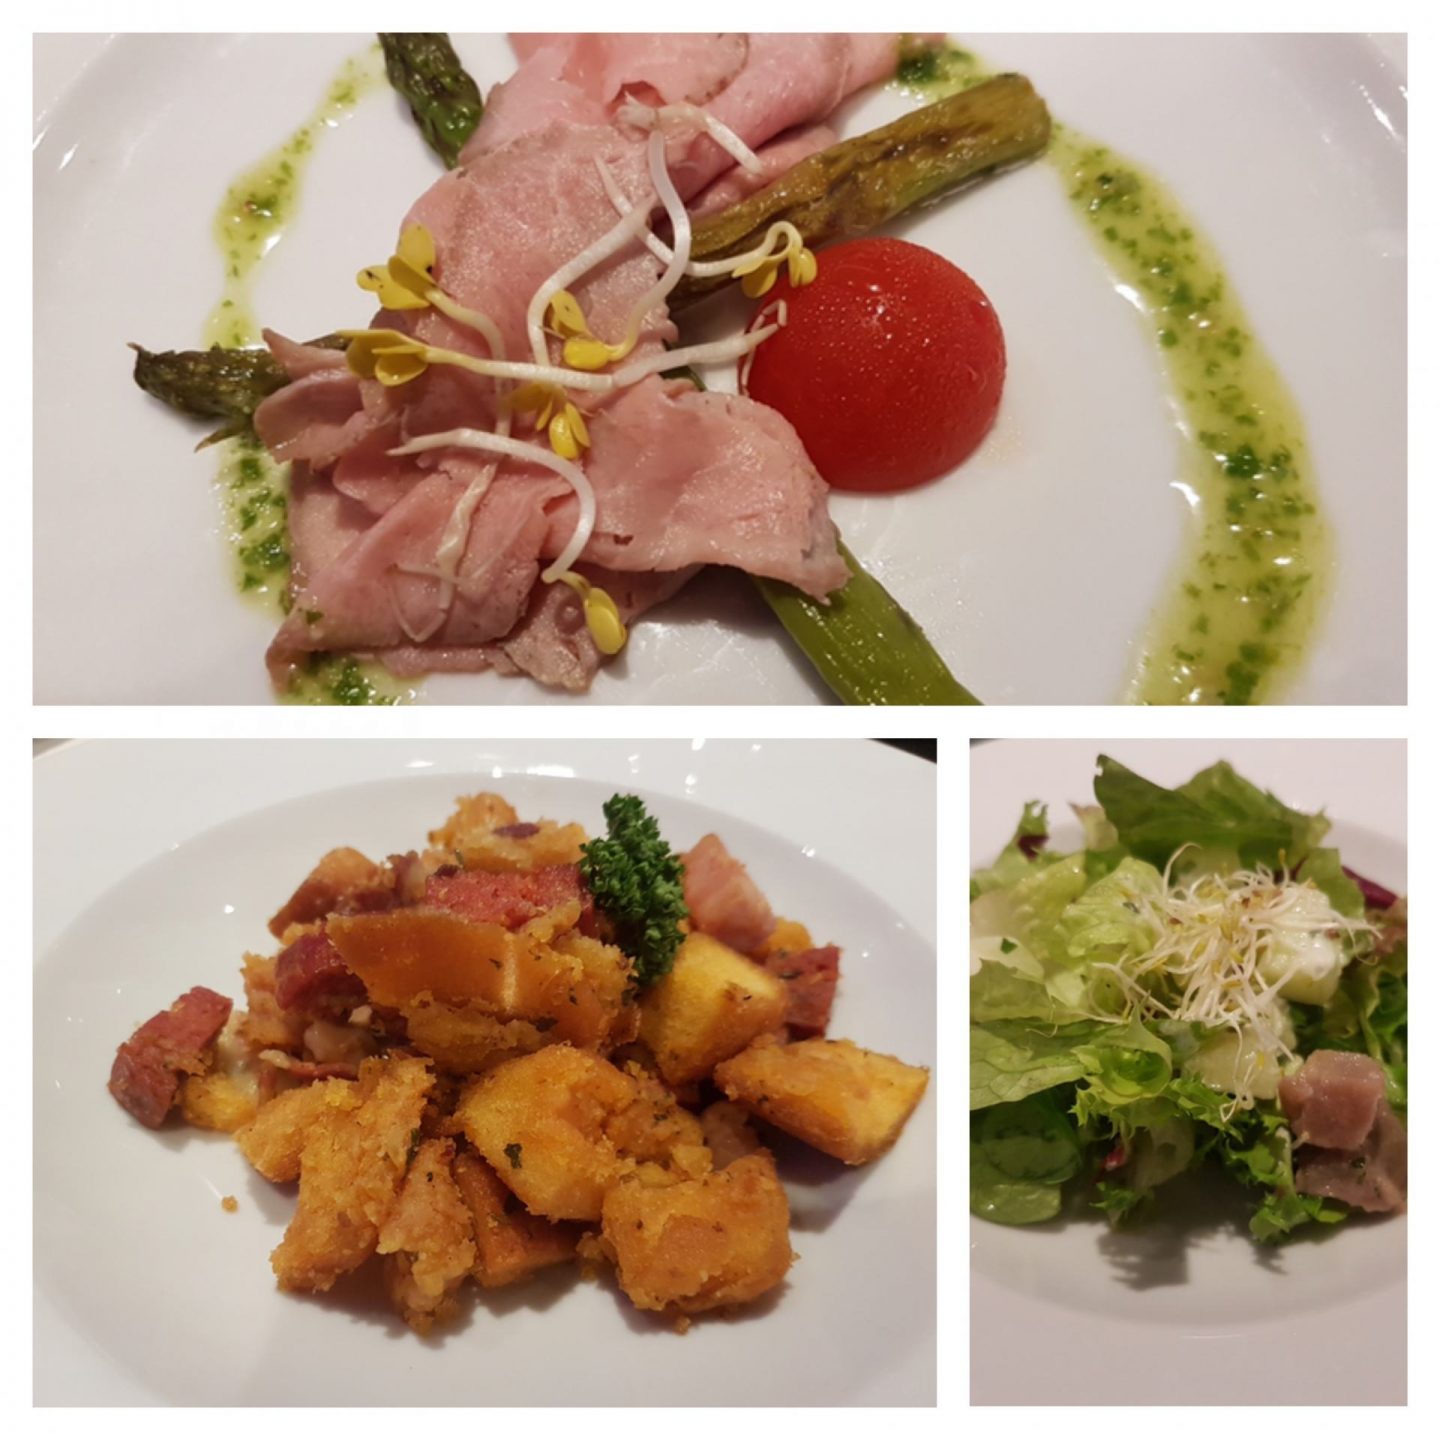 Erfahrung Bewertung Kritik Restaurant Atlantik Mediterran Mein Schiff 4 Foodblog Sternestulle